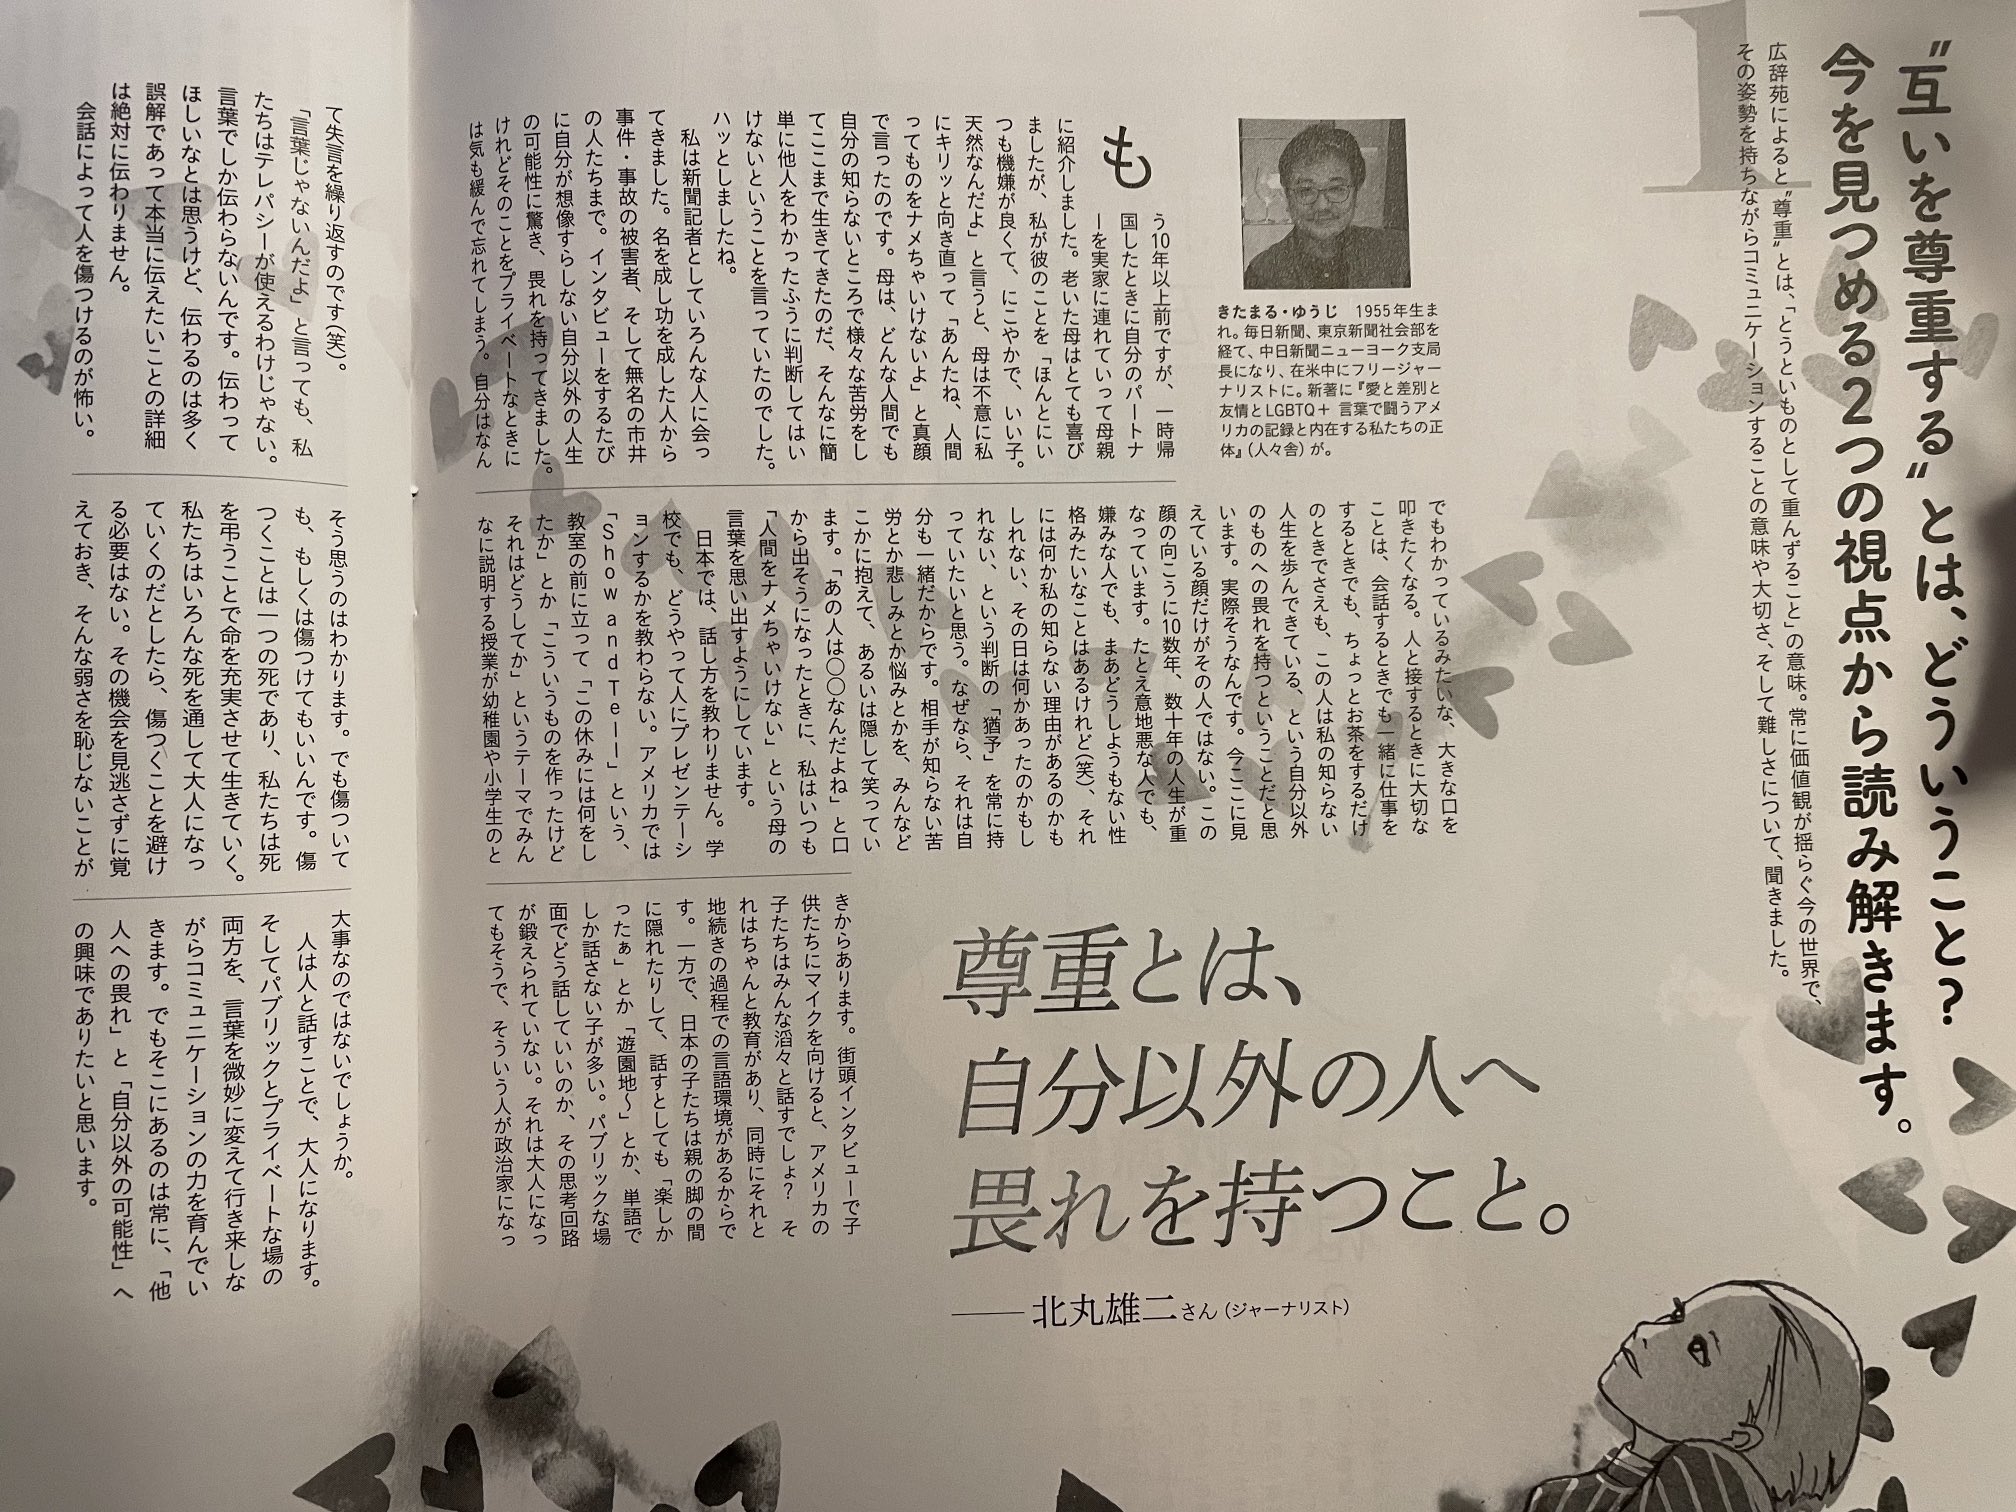 北丸雄二 On Twitter 女性誌を含めこれまで色んな雑誌に寄稿したりはしてたが Anan は初めて 10月6日号は 会話のチカラ 特集ってことでした